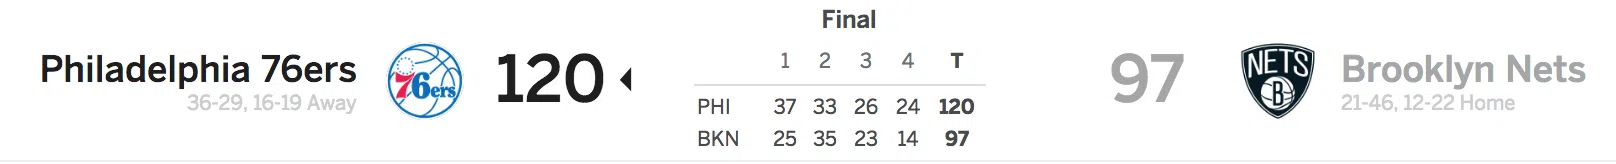 Brooklyn Nets vs Philadelphia 76ers 3-11-18 Score